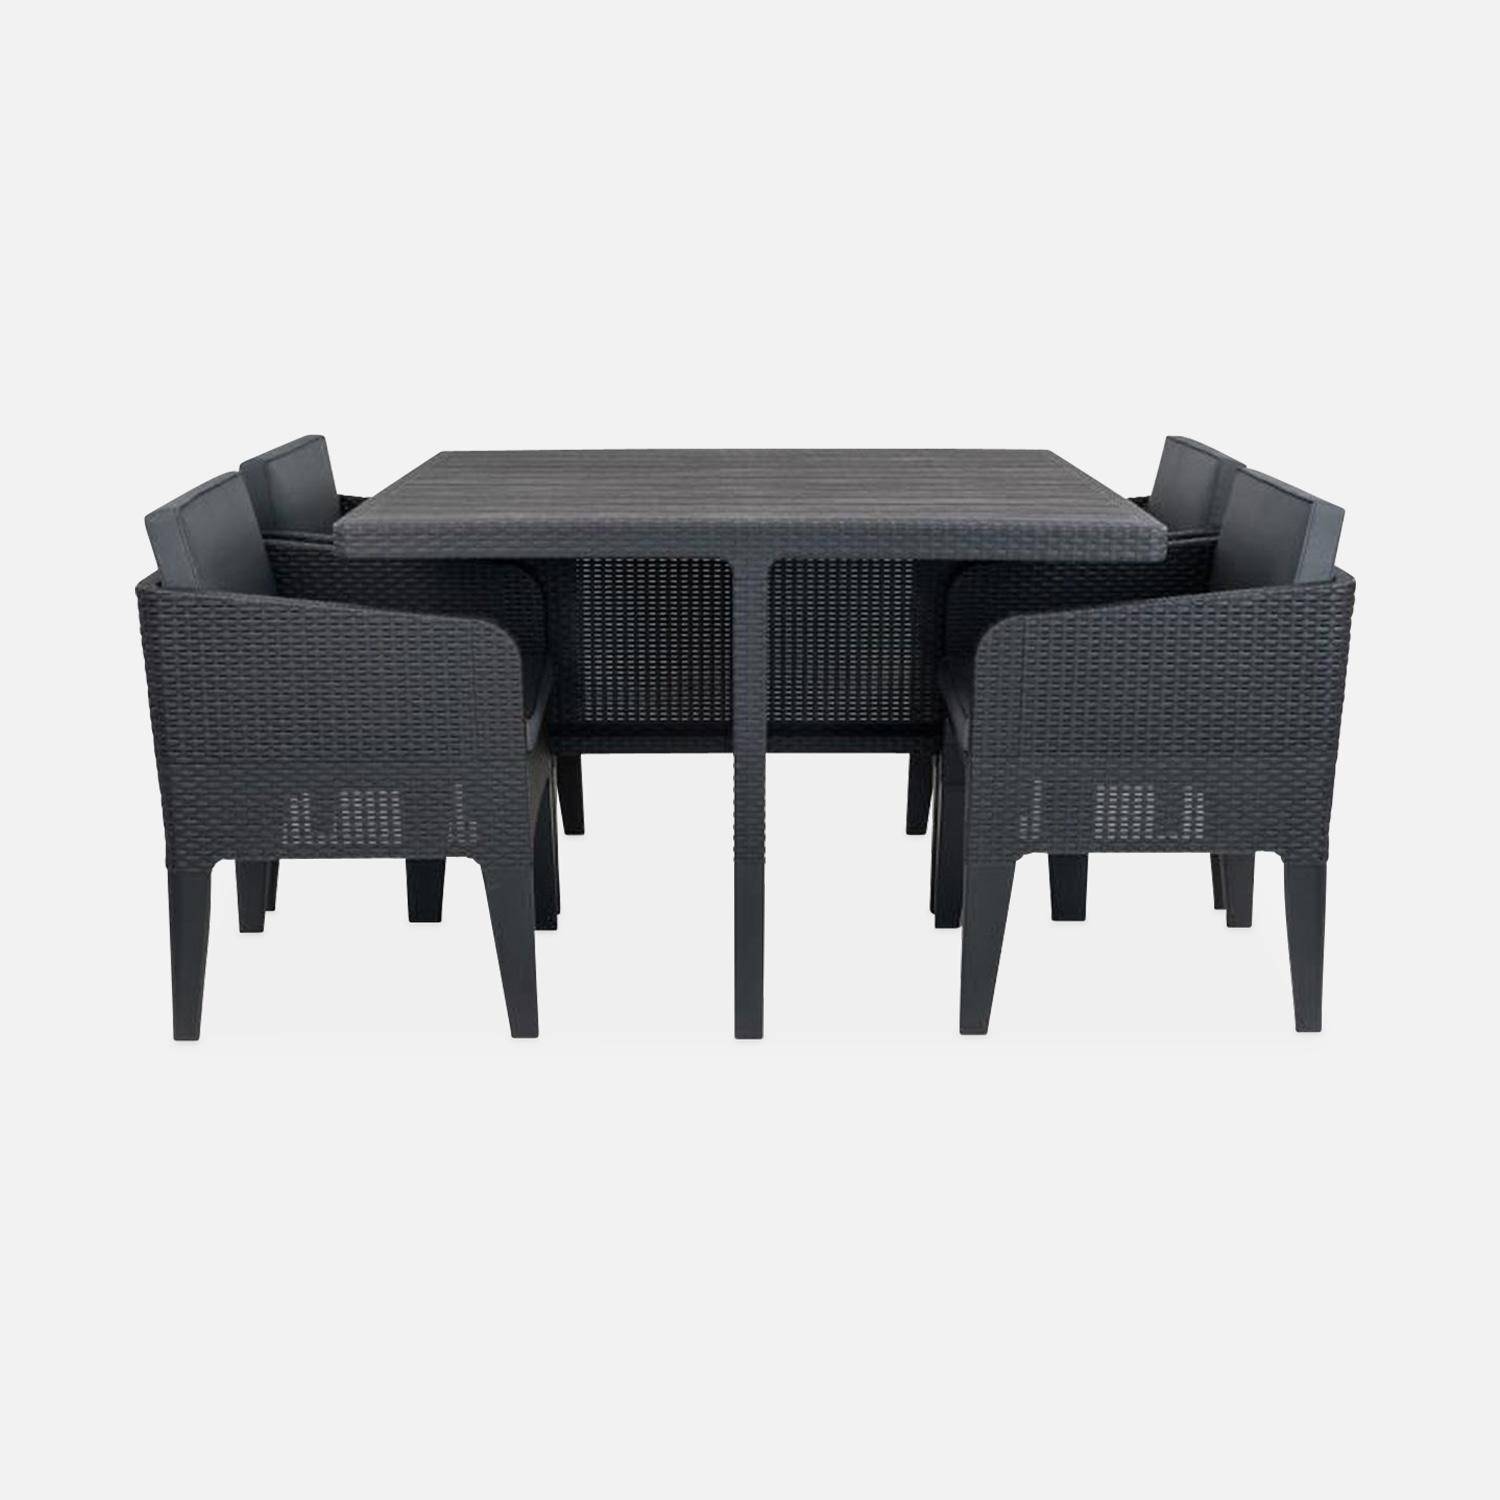 Gartentisch aus gespritztem Kunststoffharz in Rattanoptik - Columbia 4 - Graphit, graue Kissen - 4 Sitze, 4 Sessel, ein Tisch, inkl. Kissen Photo3